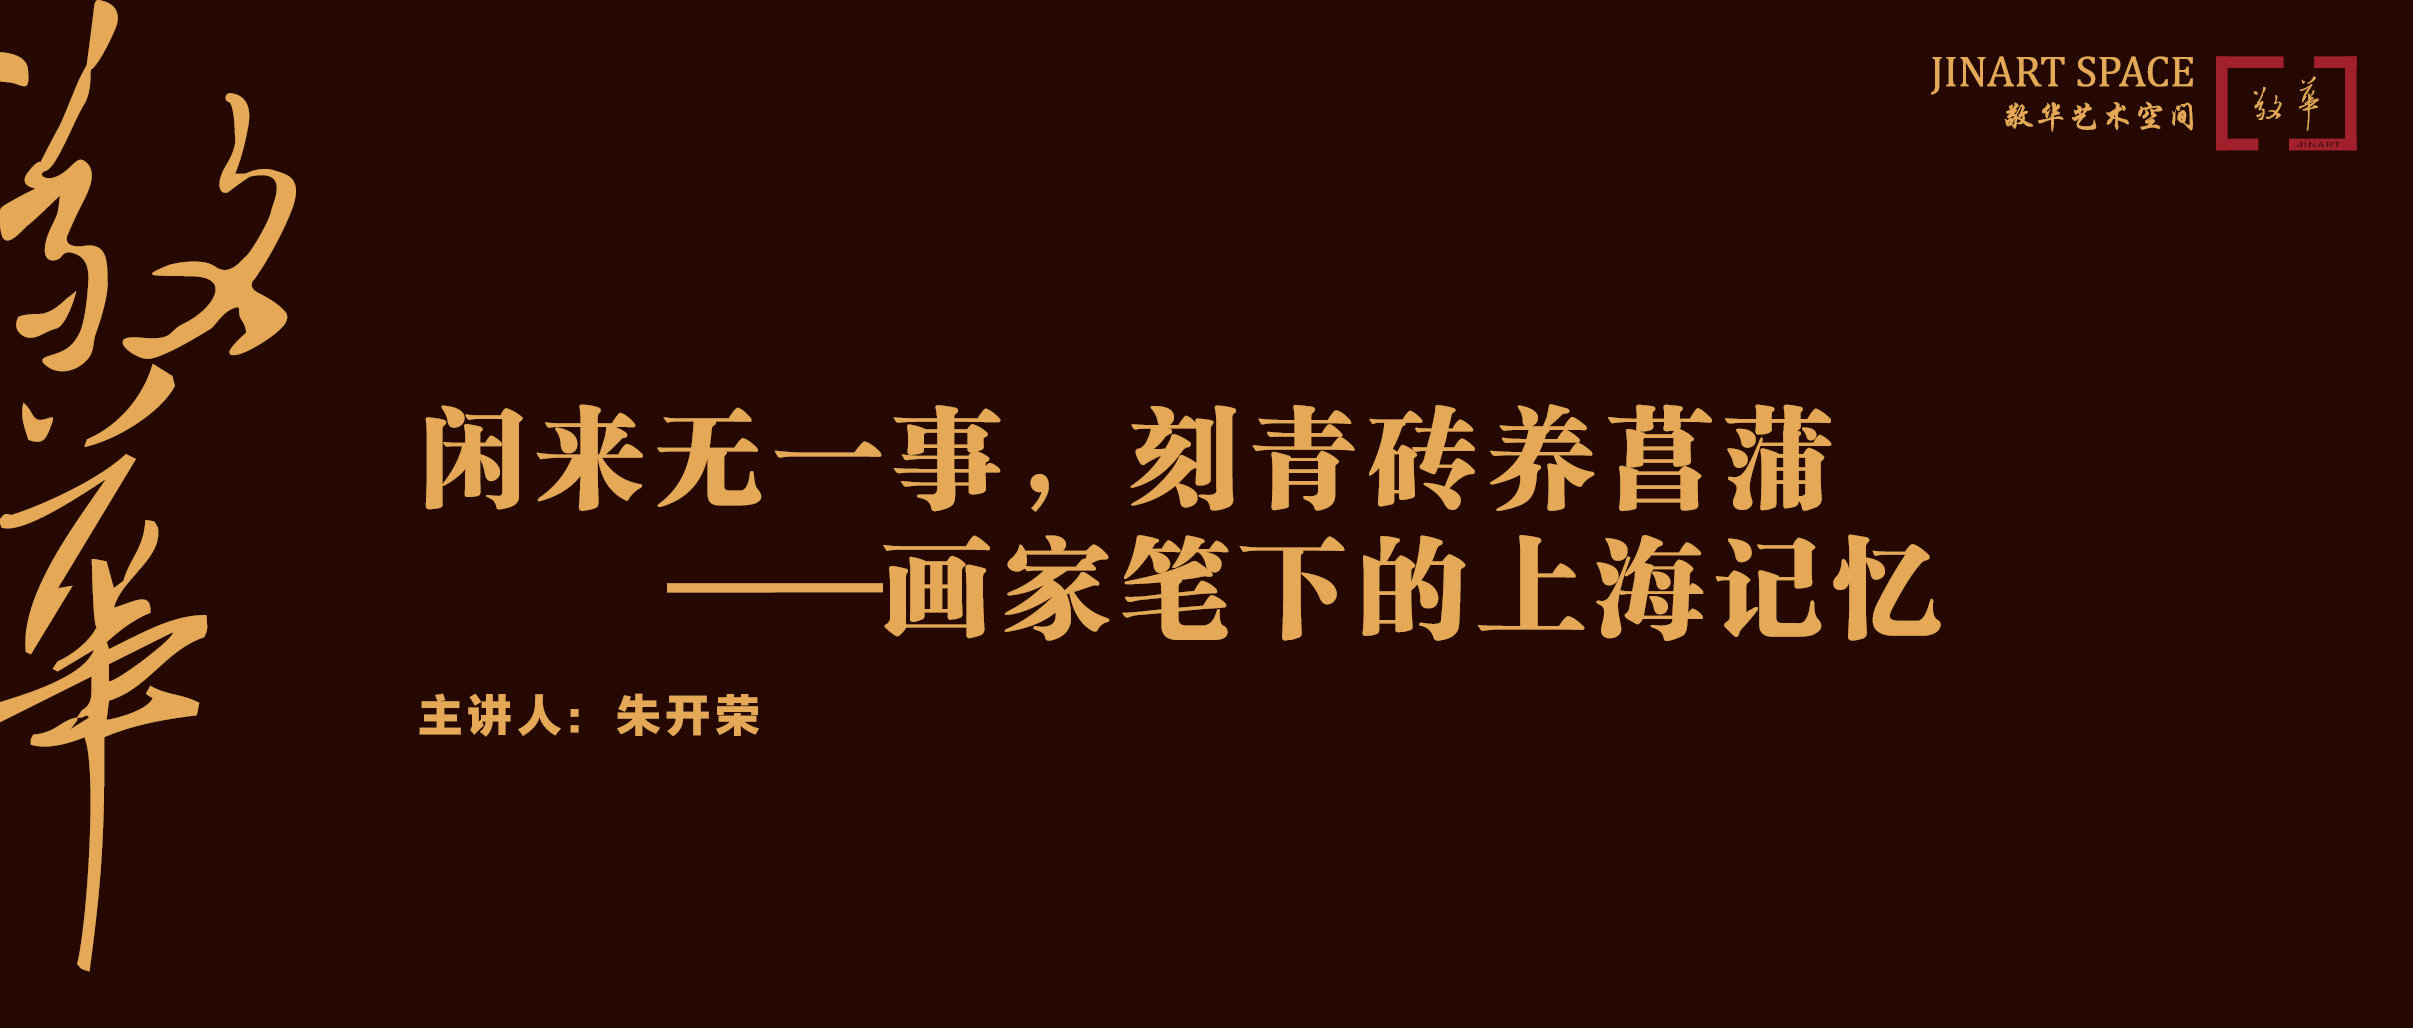 闲来无一事，刻青砖养菖蒲——画家笔下的上海记忆